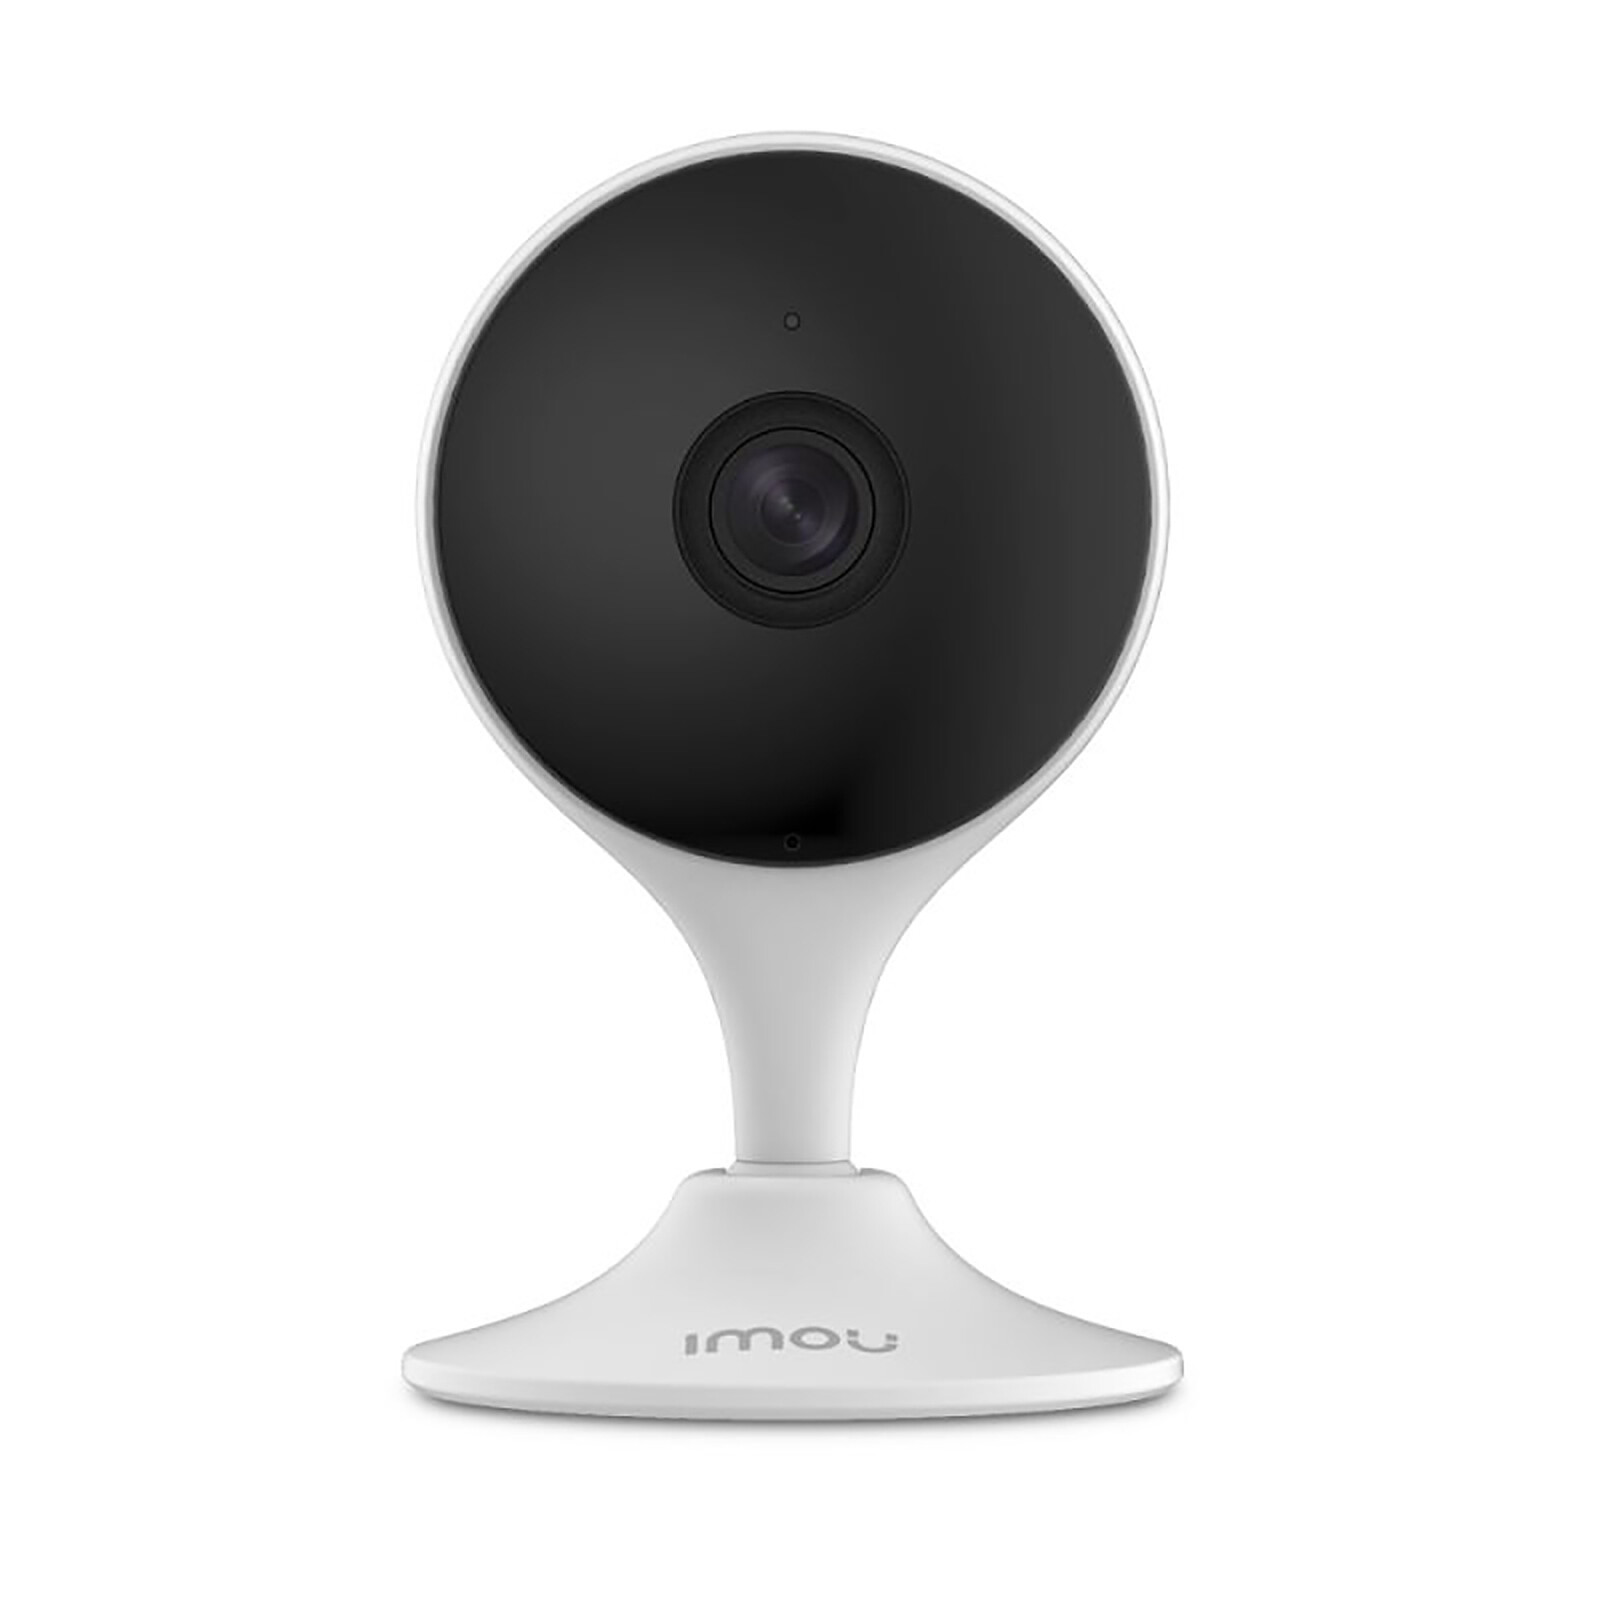 Imou - Caméra WiFi avec zoom 16x - Caméra de surveillance - LDLC